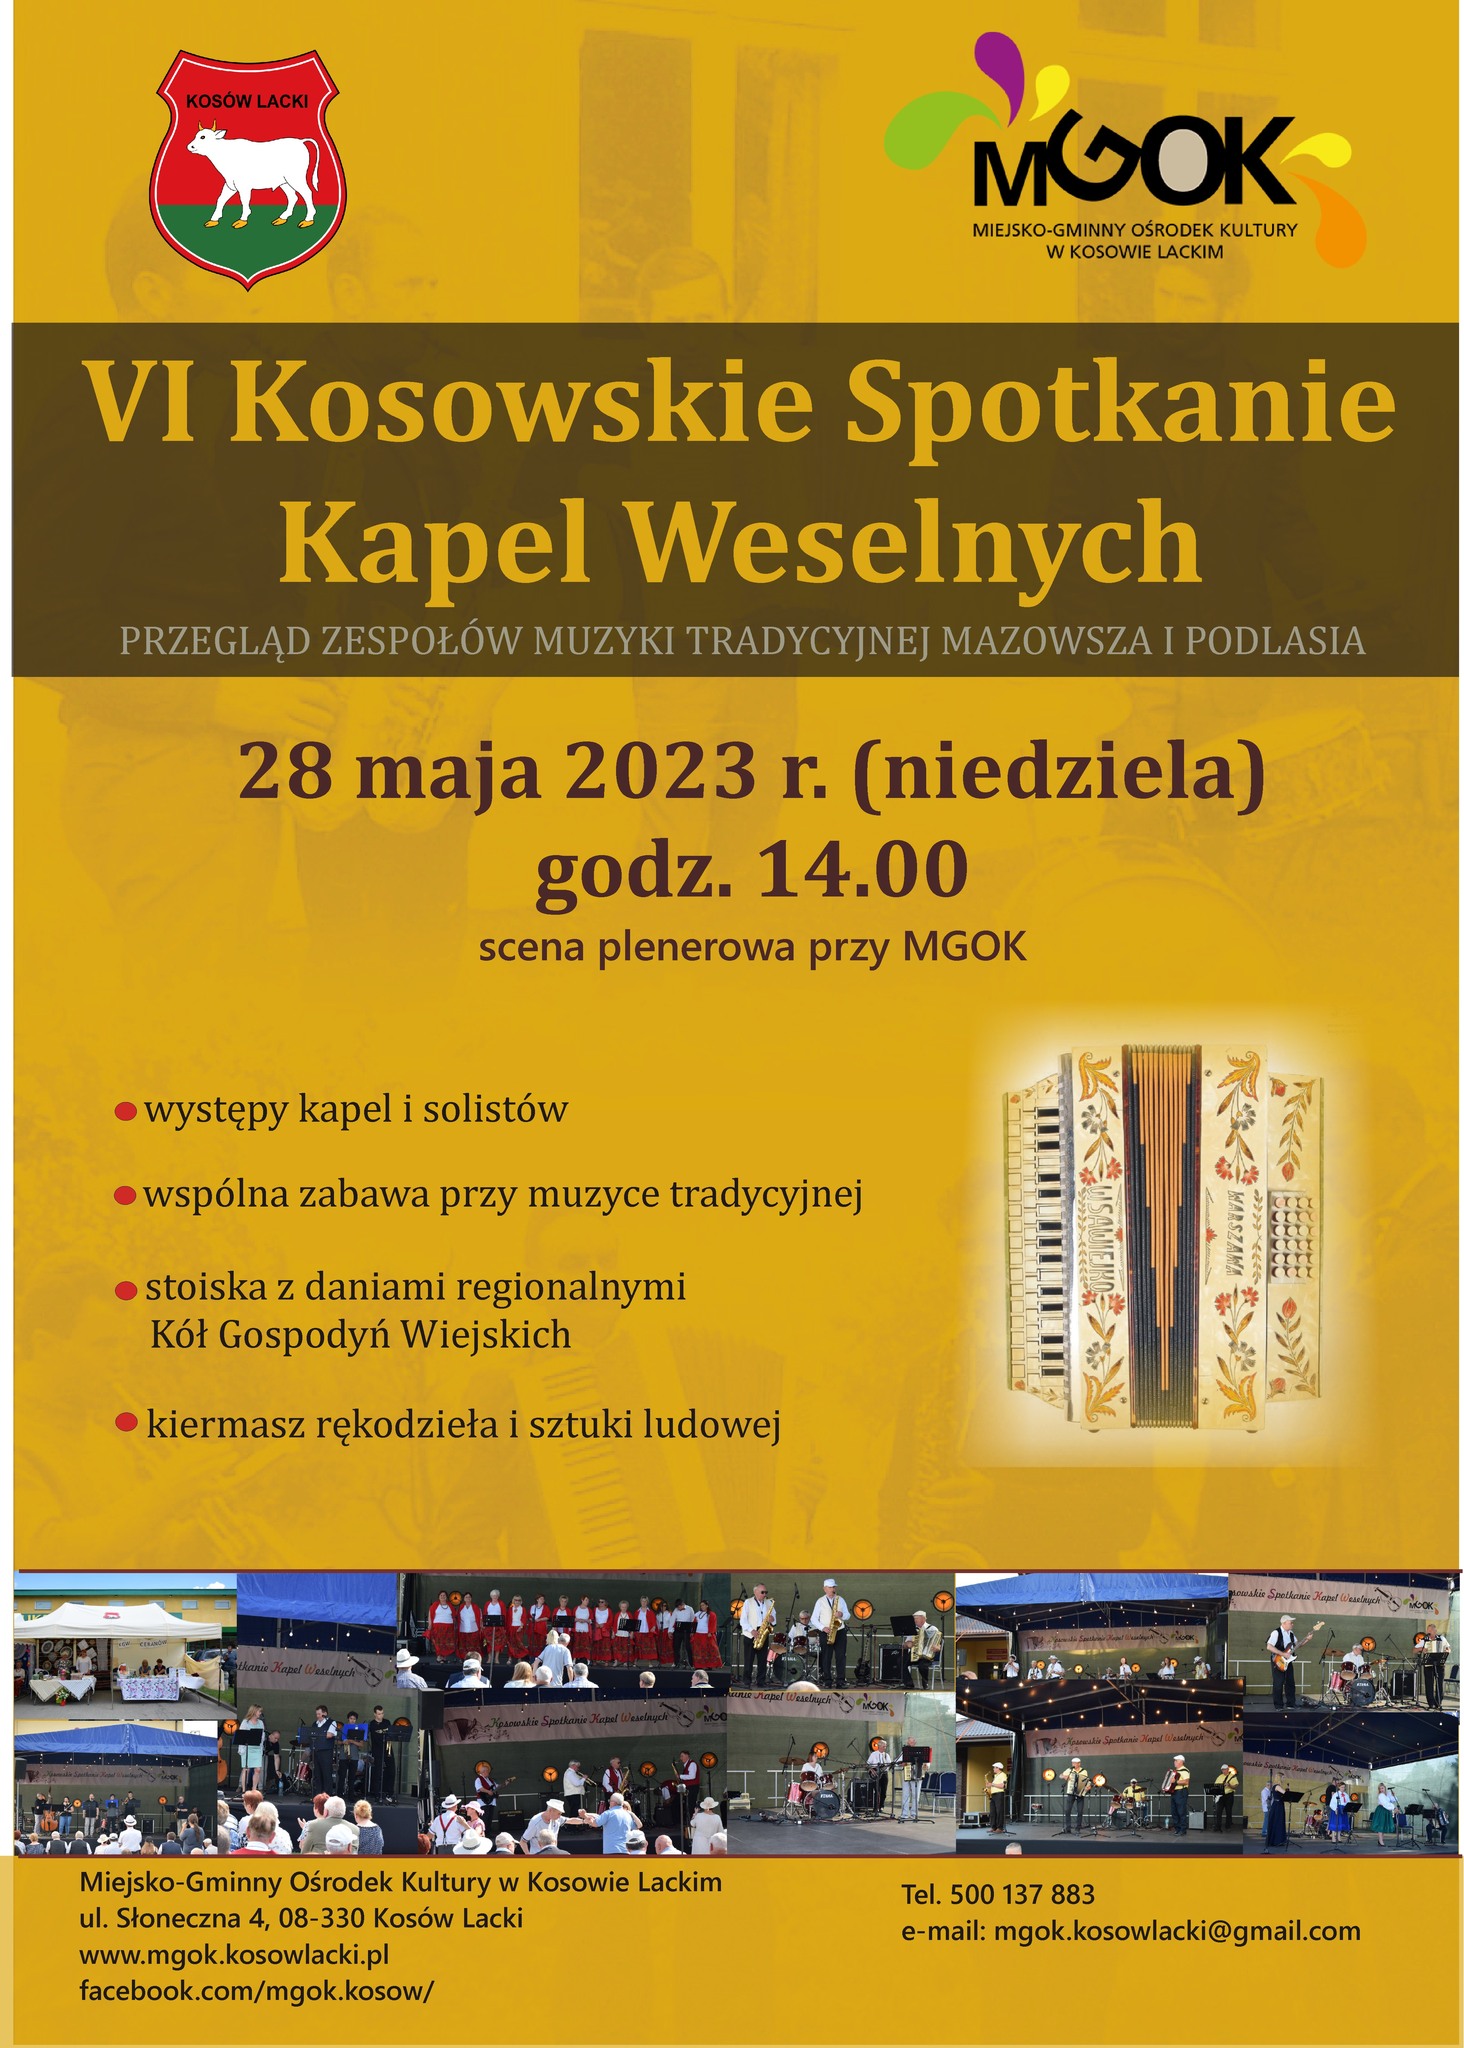 6 Kosowskie Spotkanie Kapel Weselnych 2023 - plakat